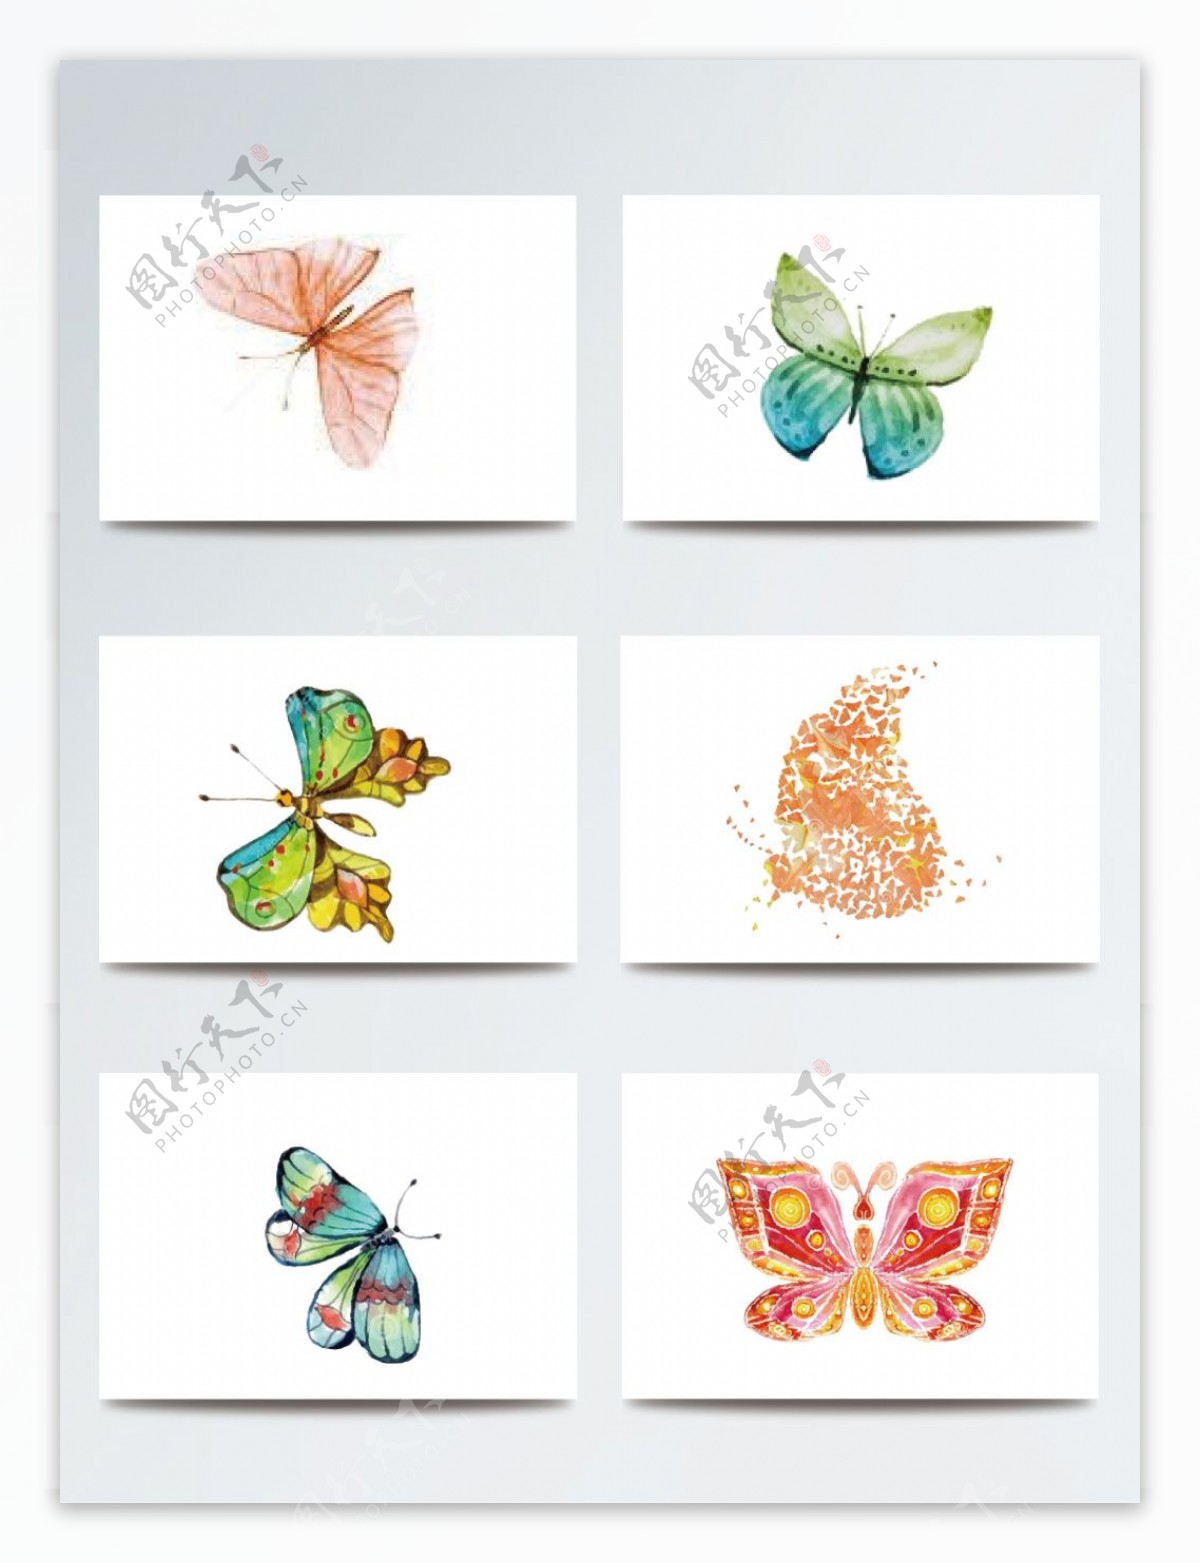 彩色平面蝴蝶矢量手绘素材